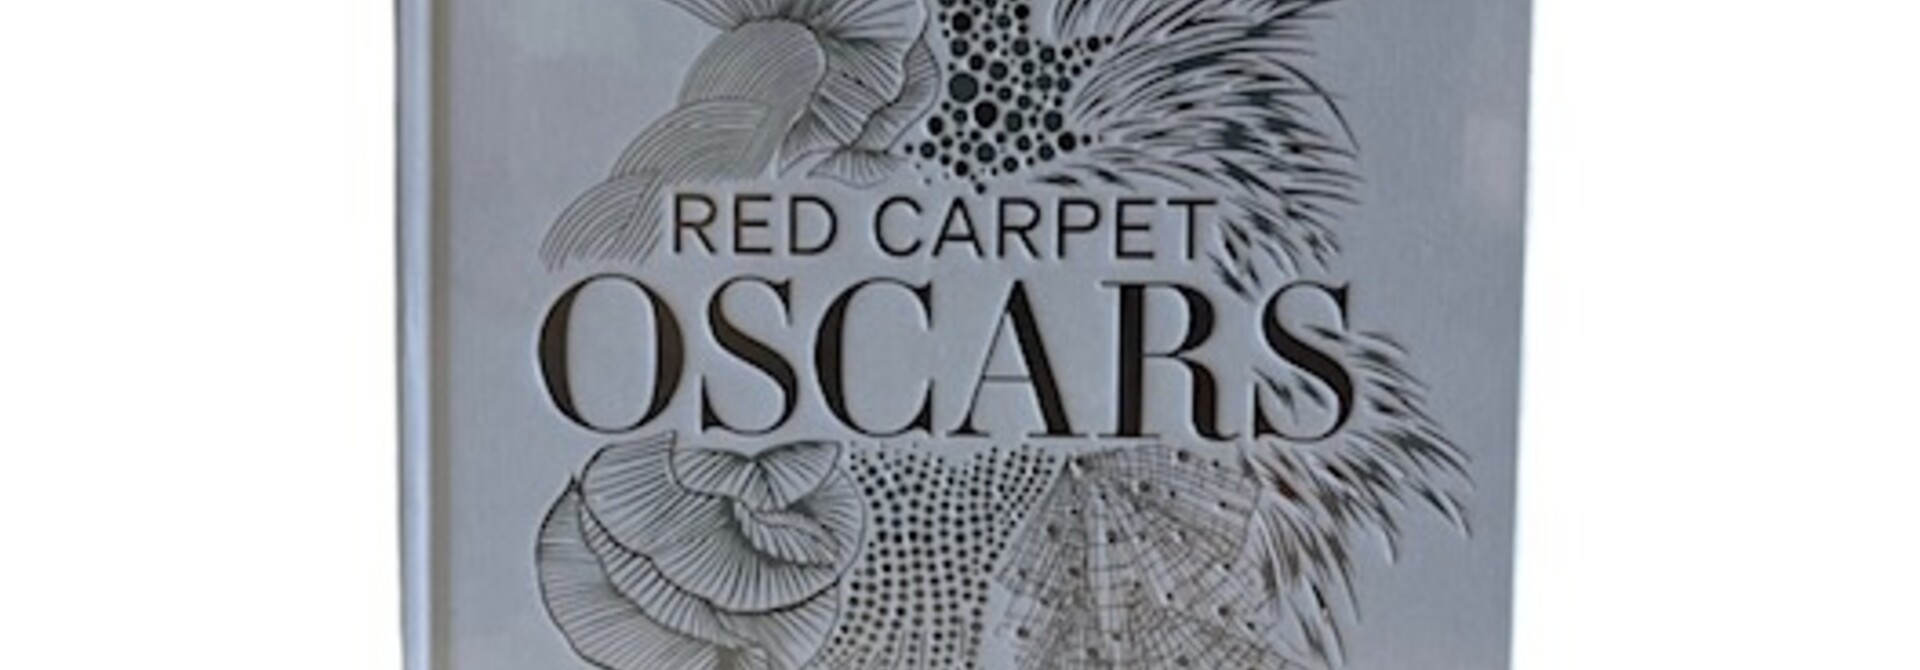 Red carpet Oscars boek